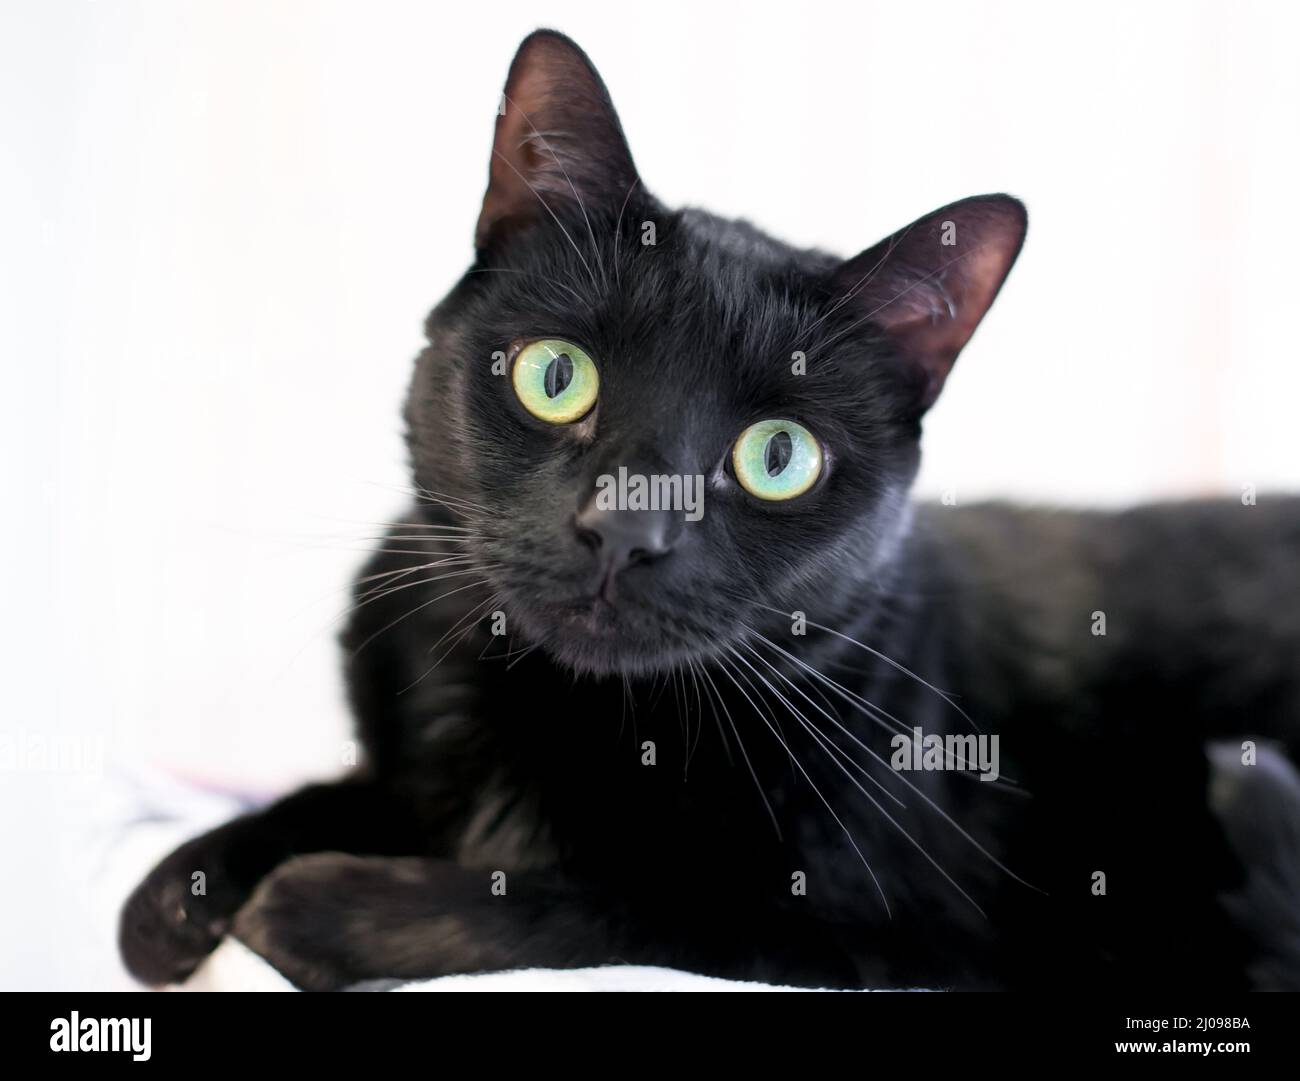 Un chat court noir avec de grands yeux verts regardant la caméra avec une inclinaison de tête Banque D'Images